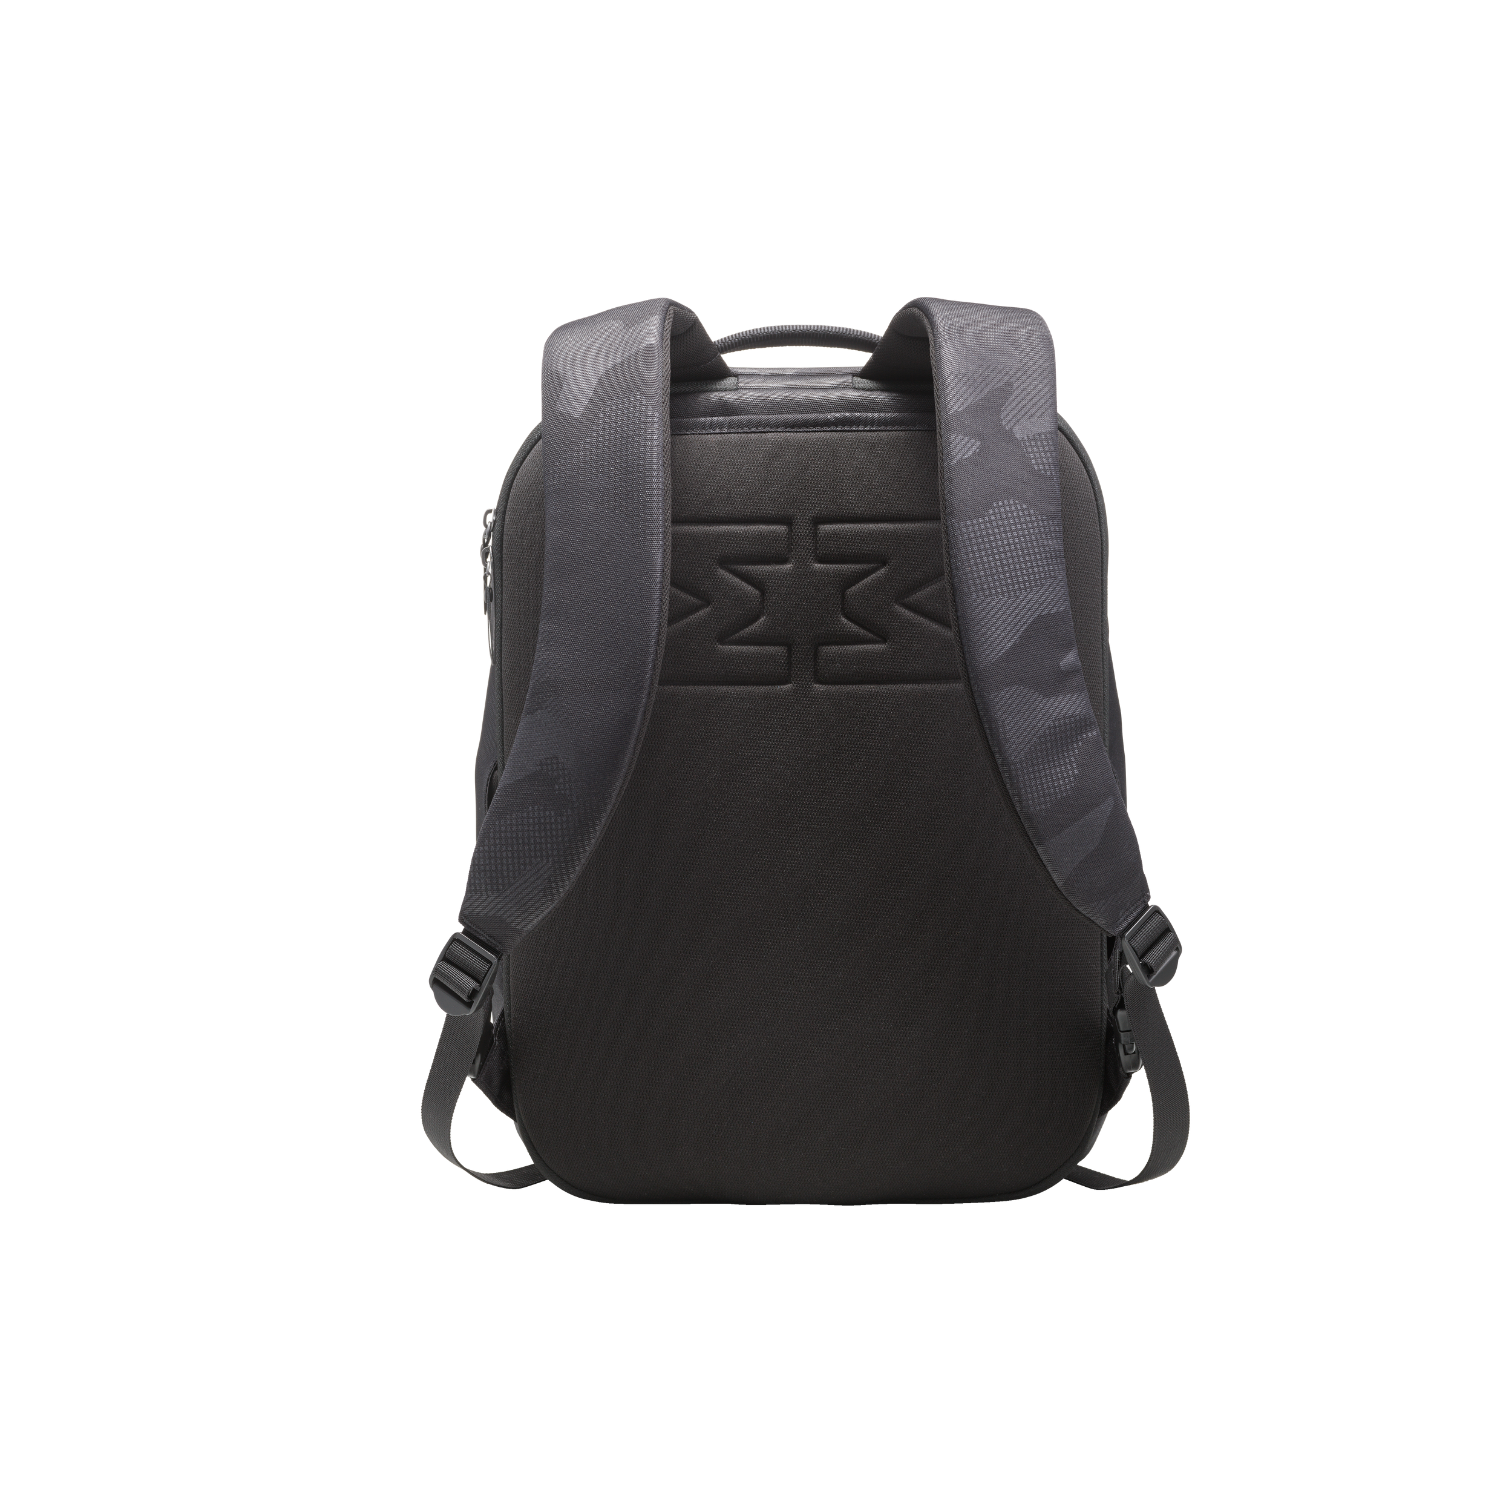 MiniMeis G5 MultipurposeTravel Backpack Black